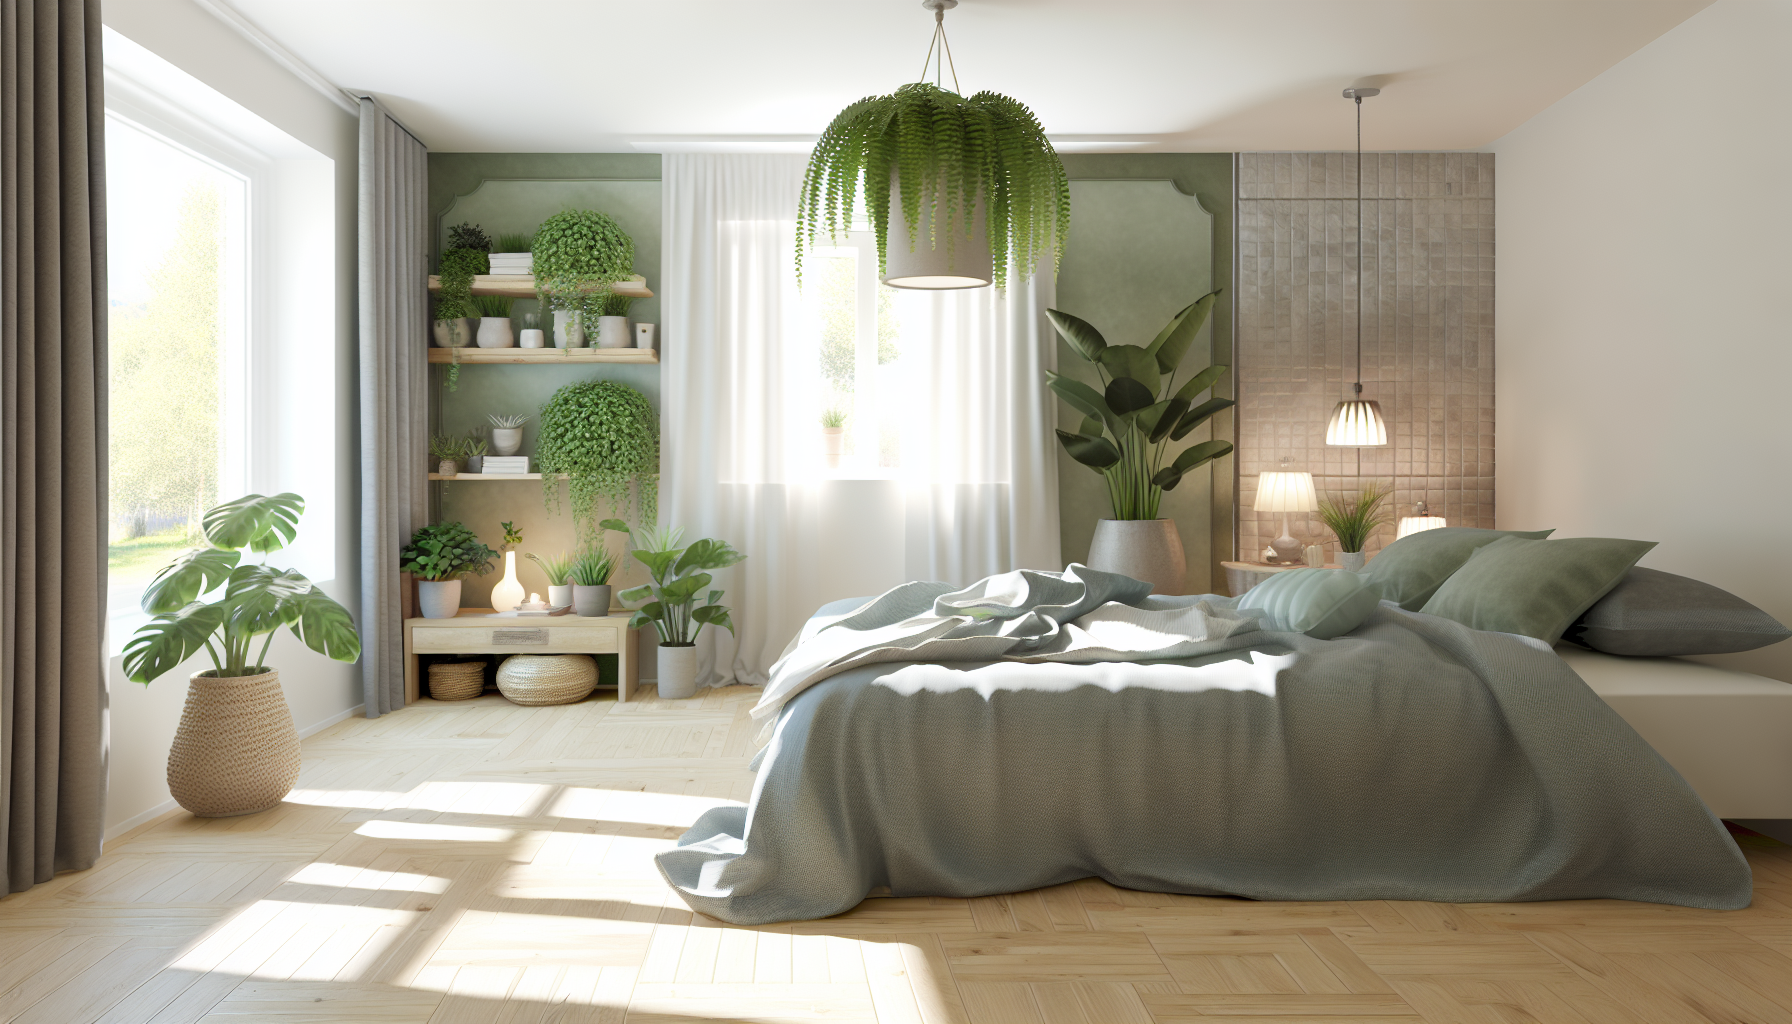 Spokojna sypialnia z roślinami i kojącymi zapachami tworzącymi relaksującą atmosferę